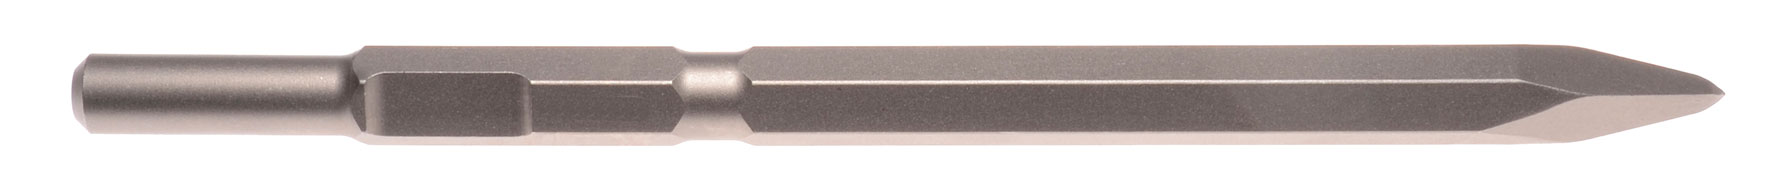 Spitzmeißel Schaft 21 mm 6-kant 